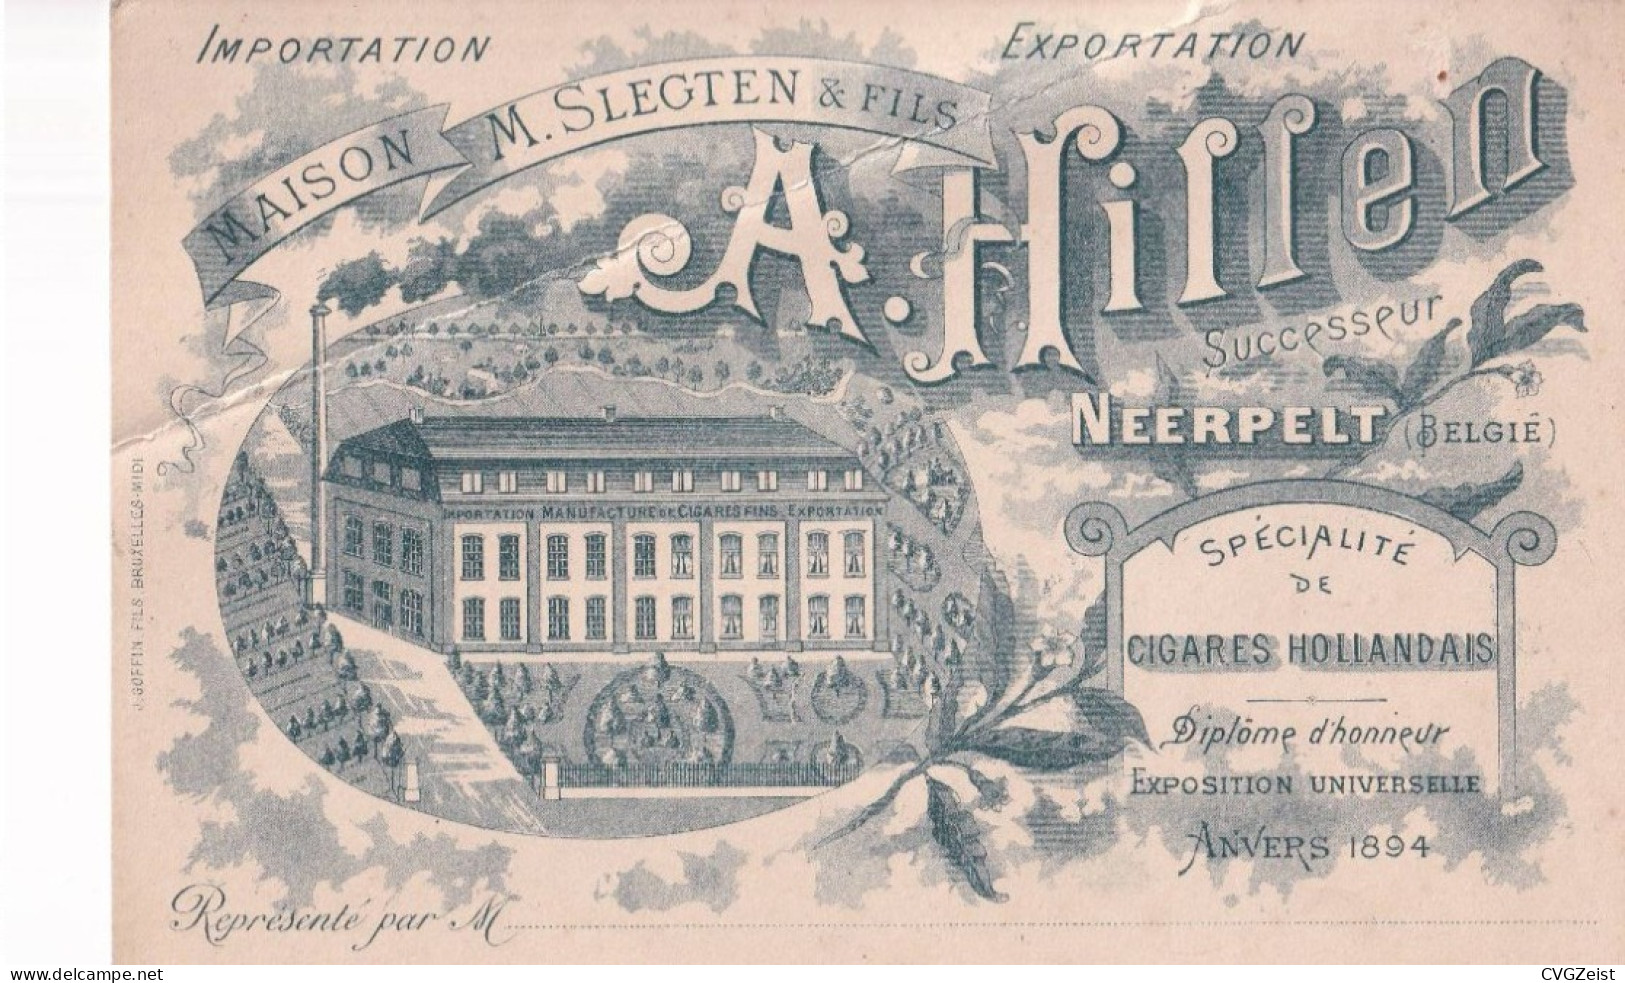 Carte Publicitaire Maison M. Slegten & Fils A Hillen Neerpelt Specialite De Cigares Hollandais Anvers 1894 - Advertising